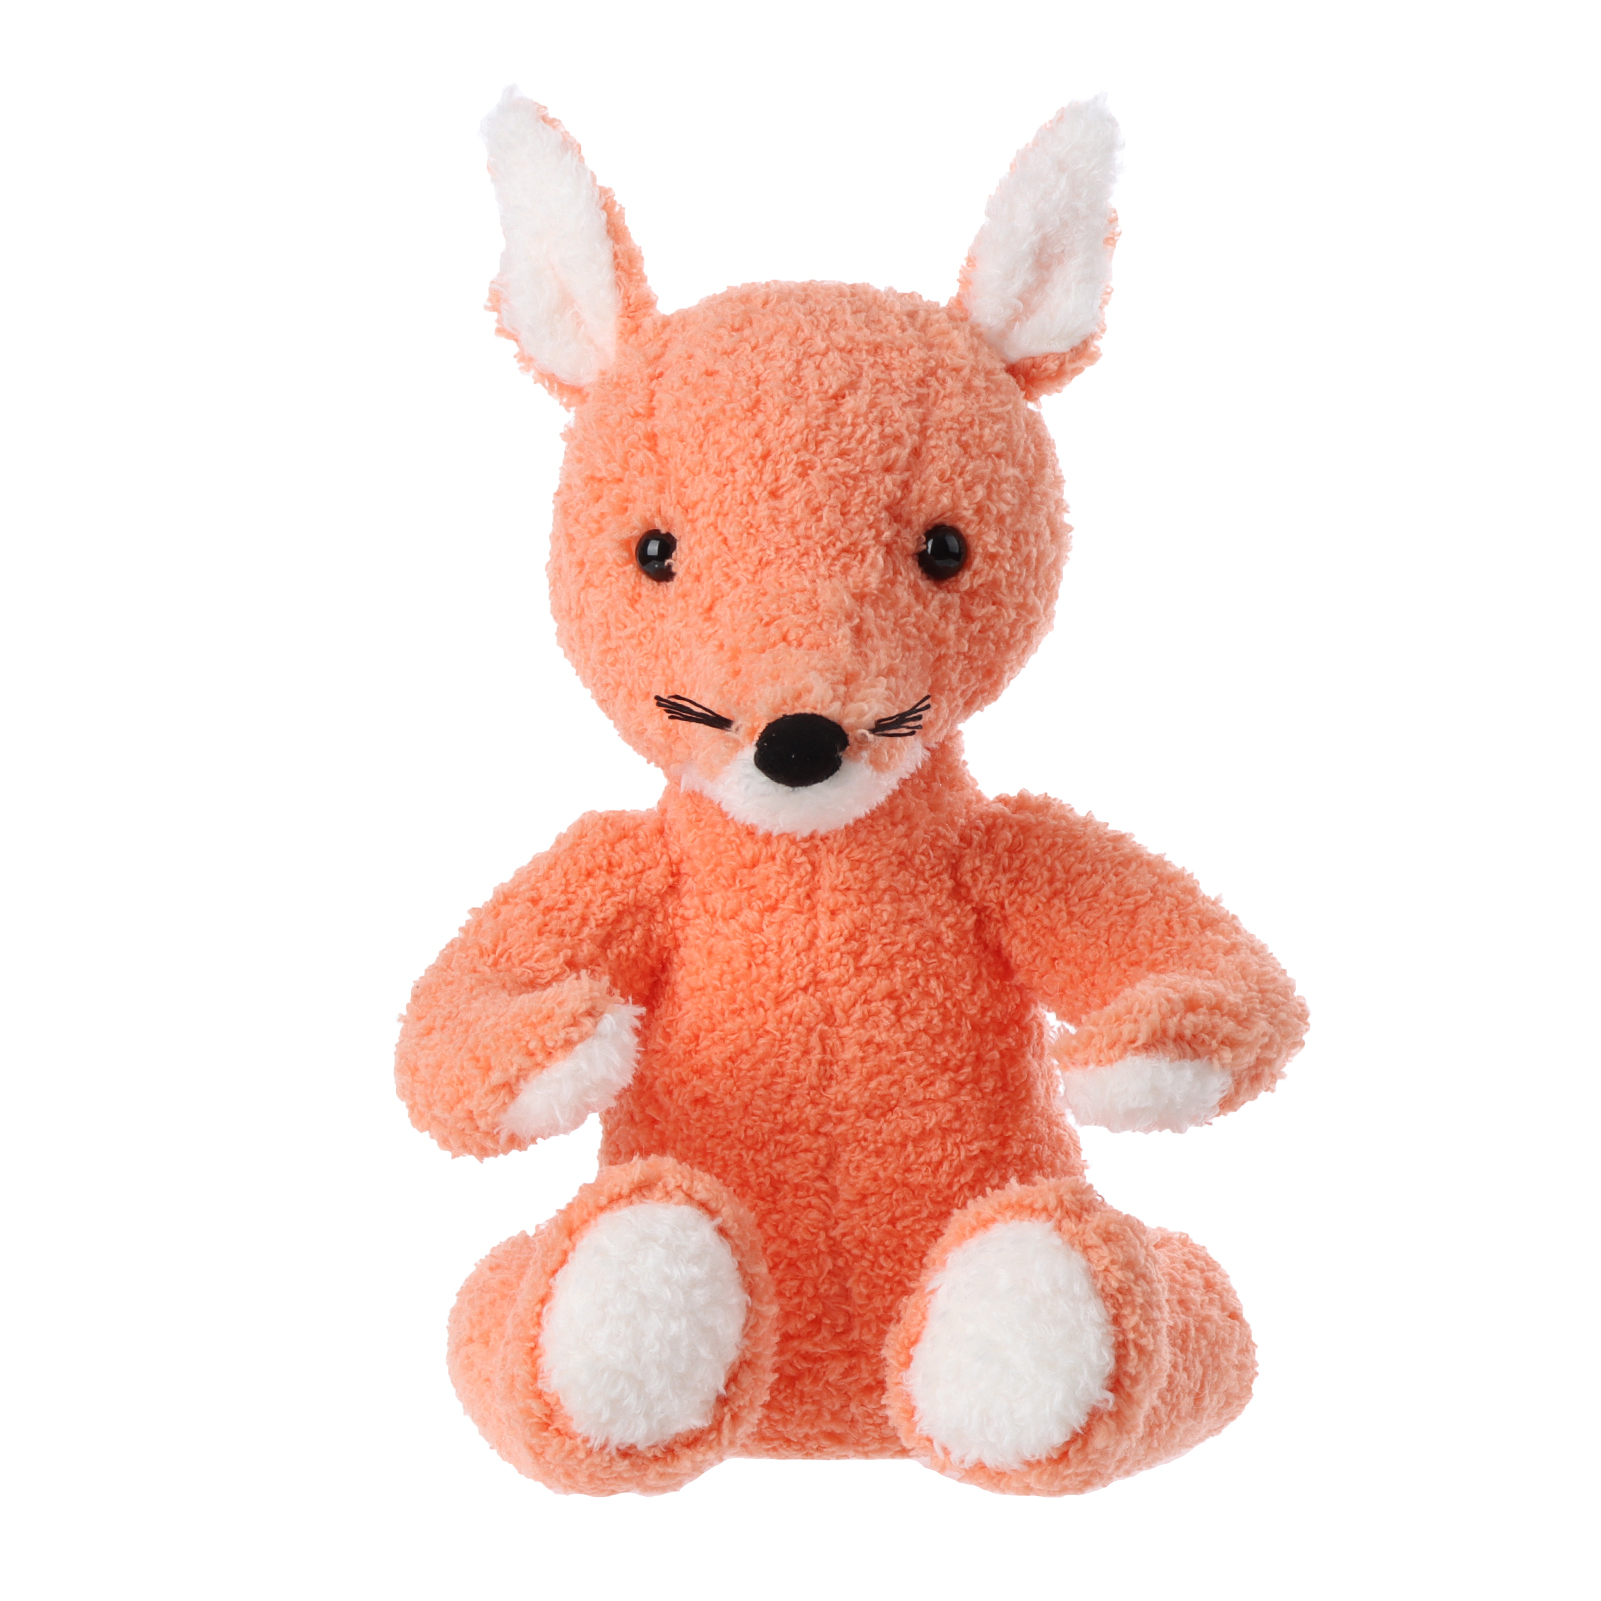 Apricot Lamb Chubby Fox Stuffed Animal Soft Plush խաղալիքներ